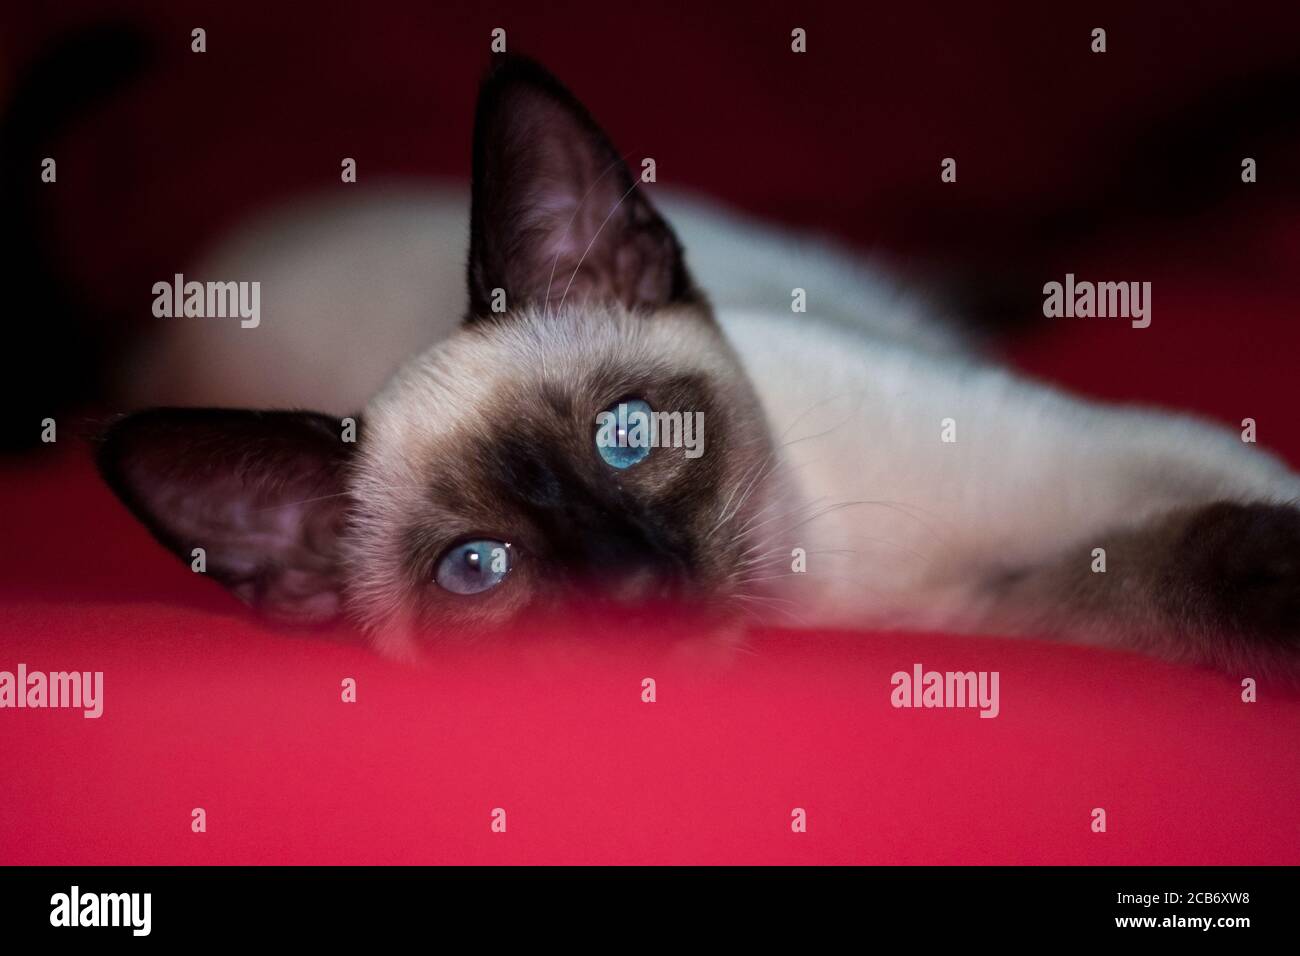 bellissimo gatto siamese che si stende su una coperta rossa Foto Stock